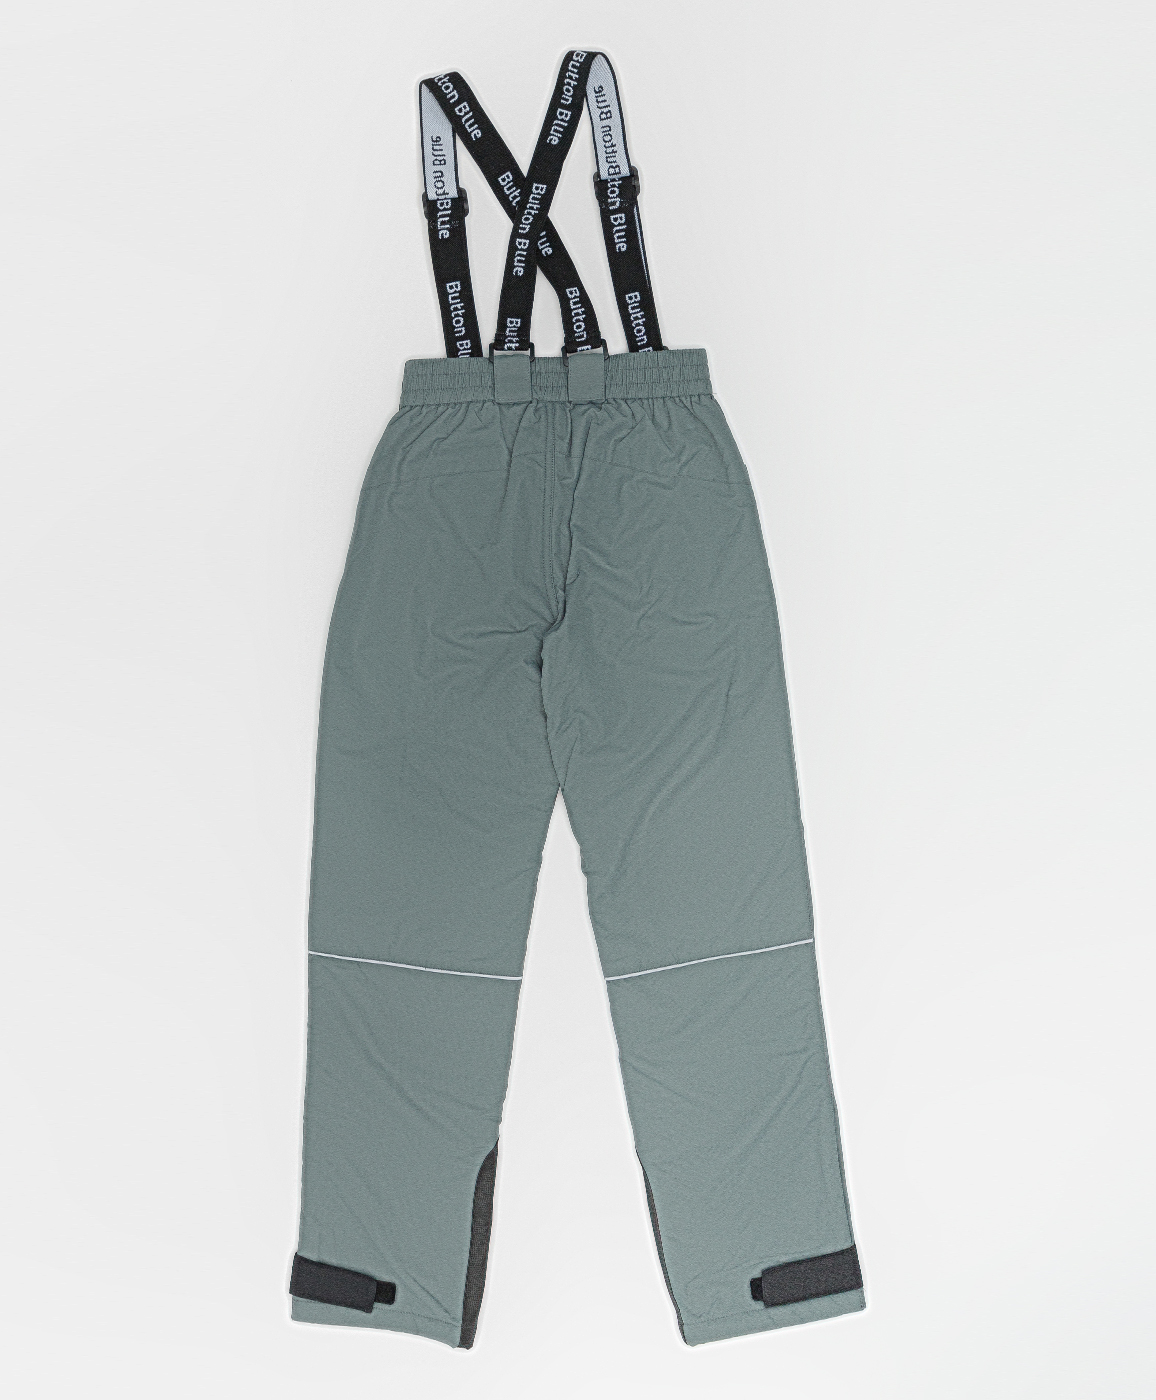 Демисезонные брюки Active Button Blue 220BBGA64012000, размер 146, цвет серый regular fit / прямые - фото 4